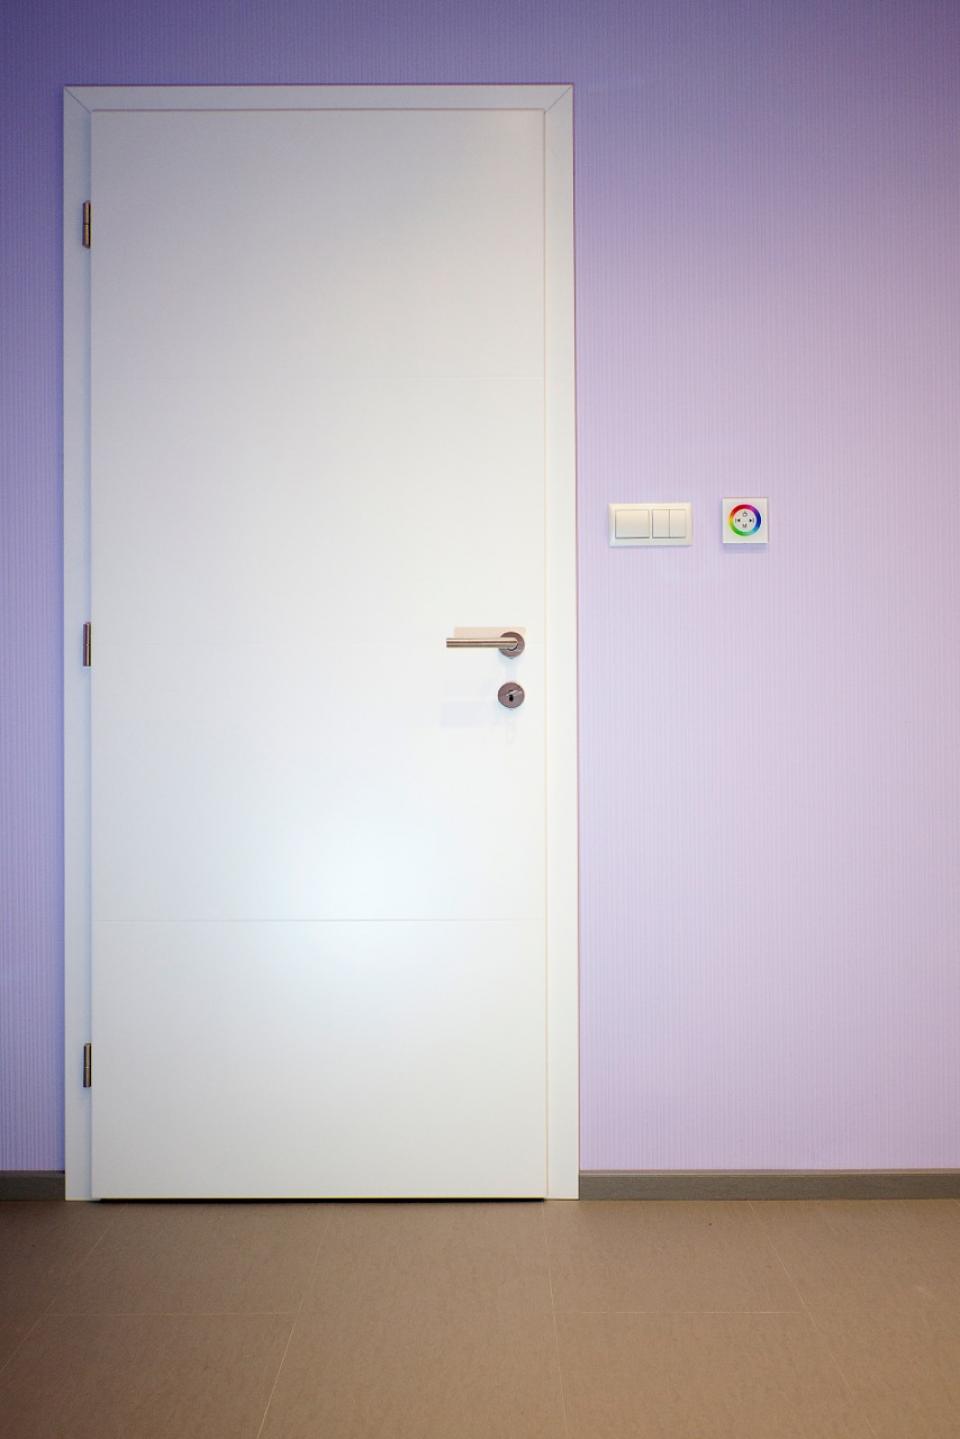 Kétszínű festett beltéri ajtók egy legénylakásban | Referencia - Ajtóház